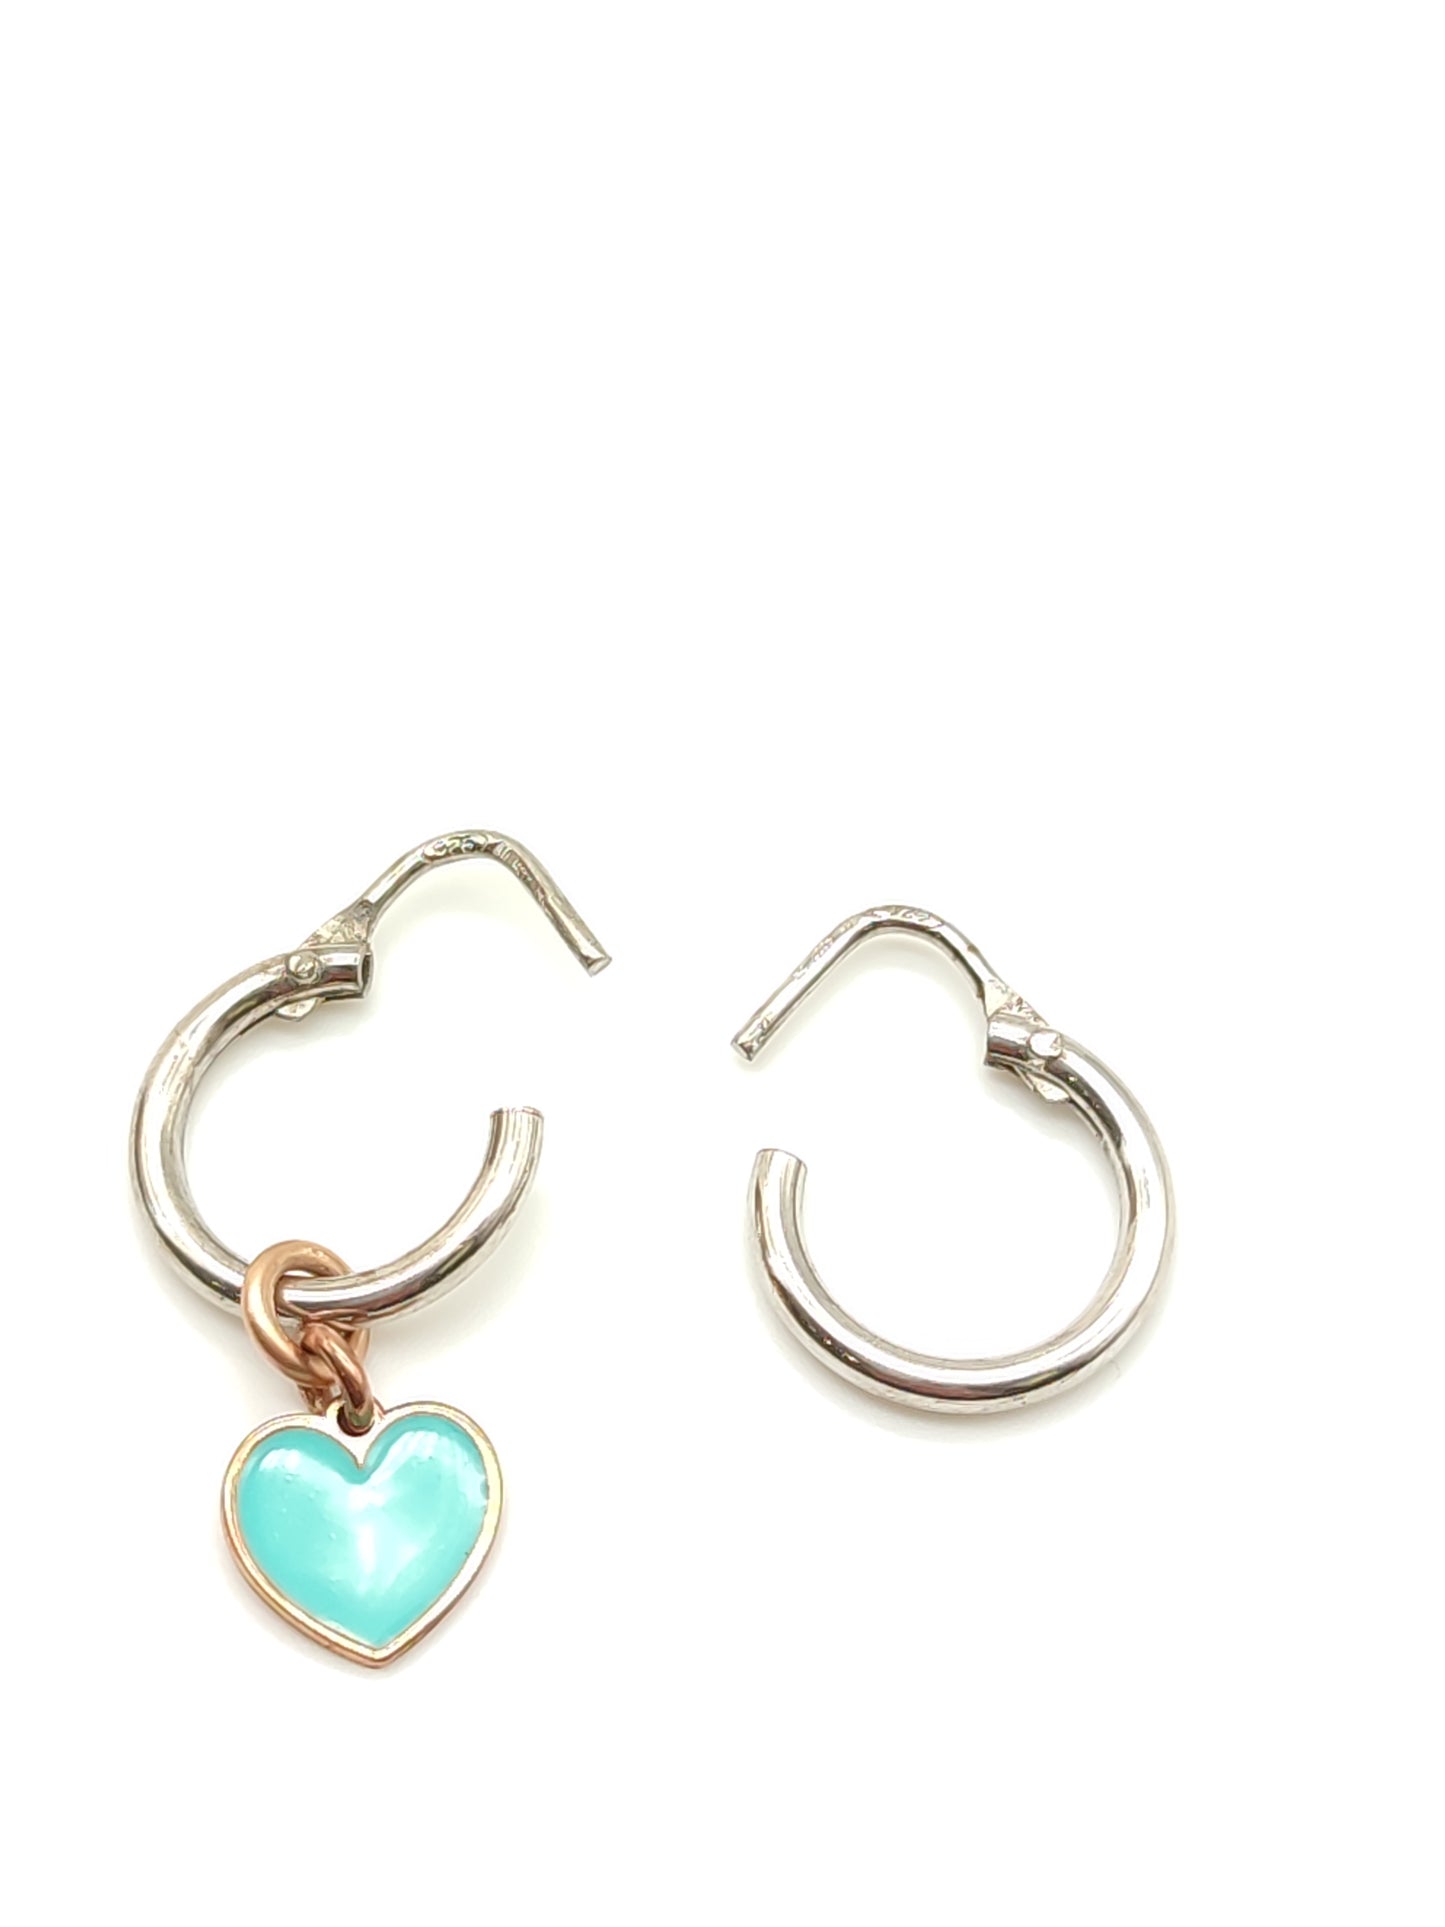 Silver earrings with blue enamel heart pendant